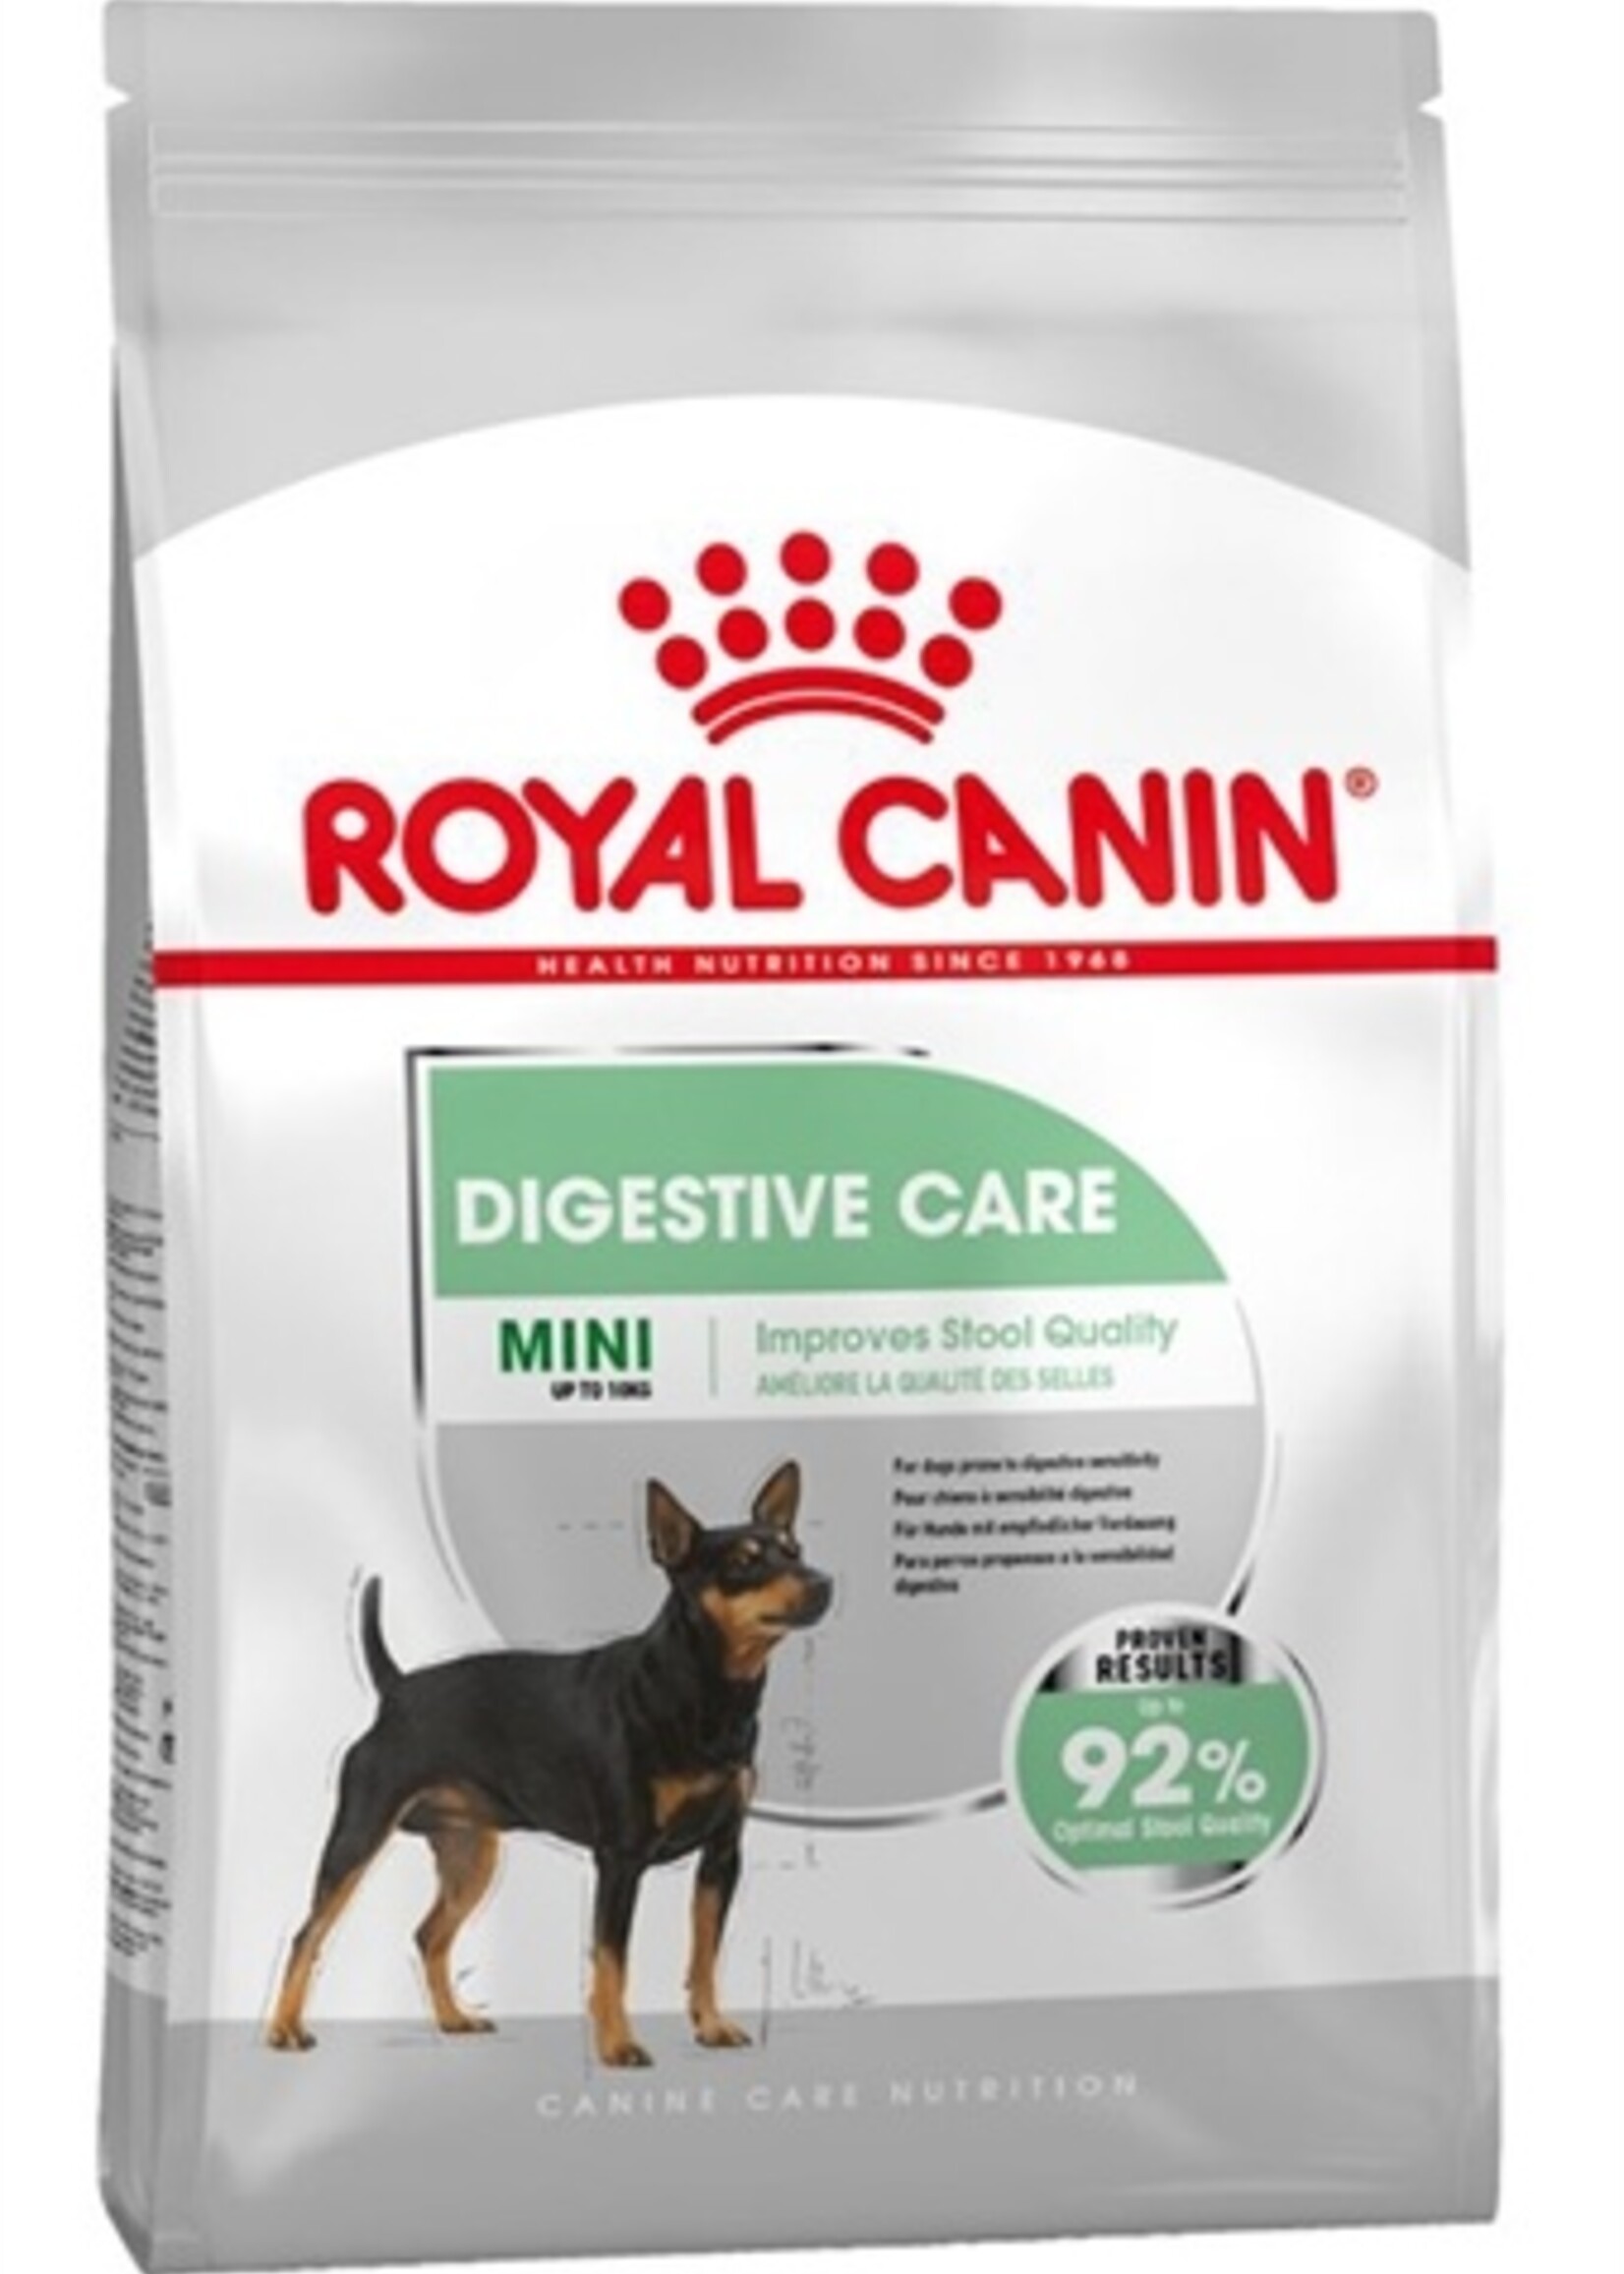 Royal canin Royal canin mini digestive care